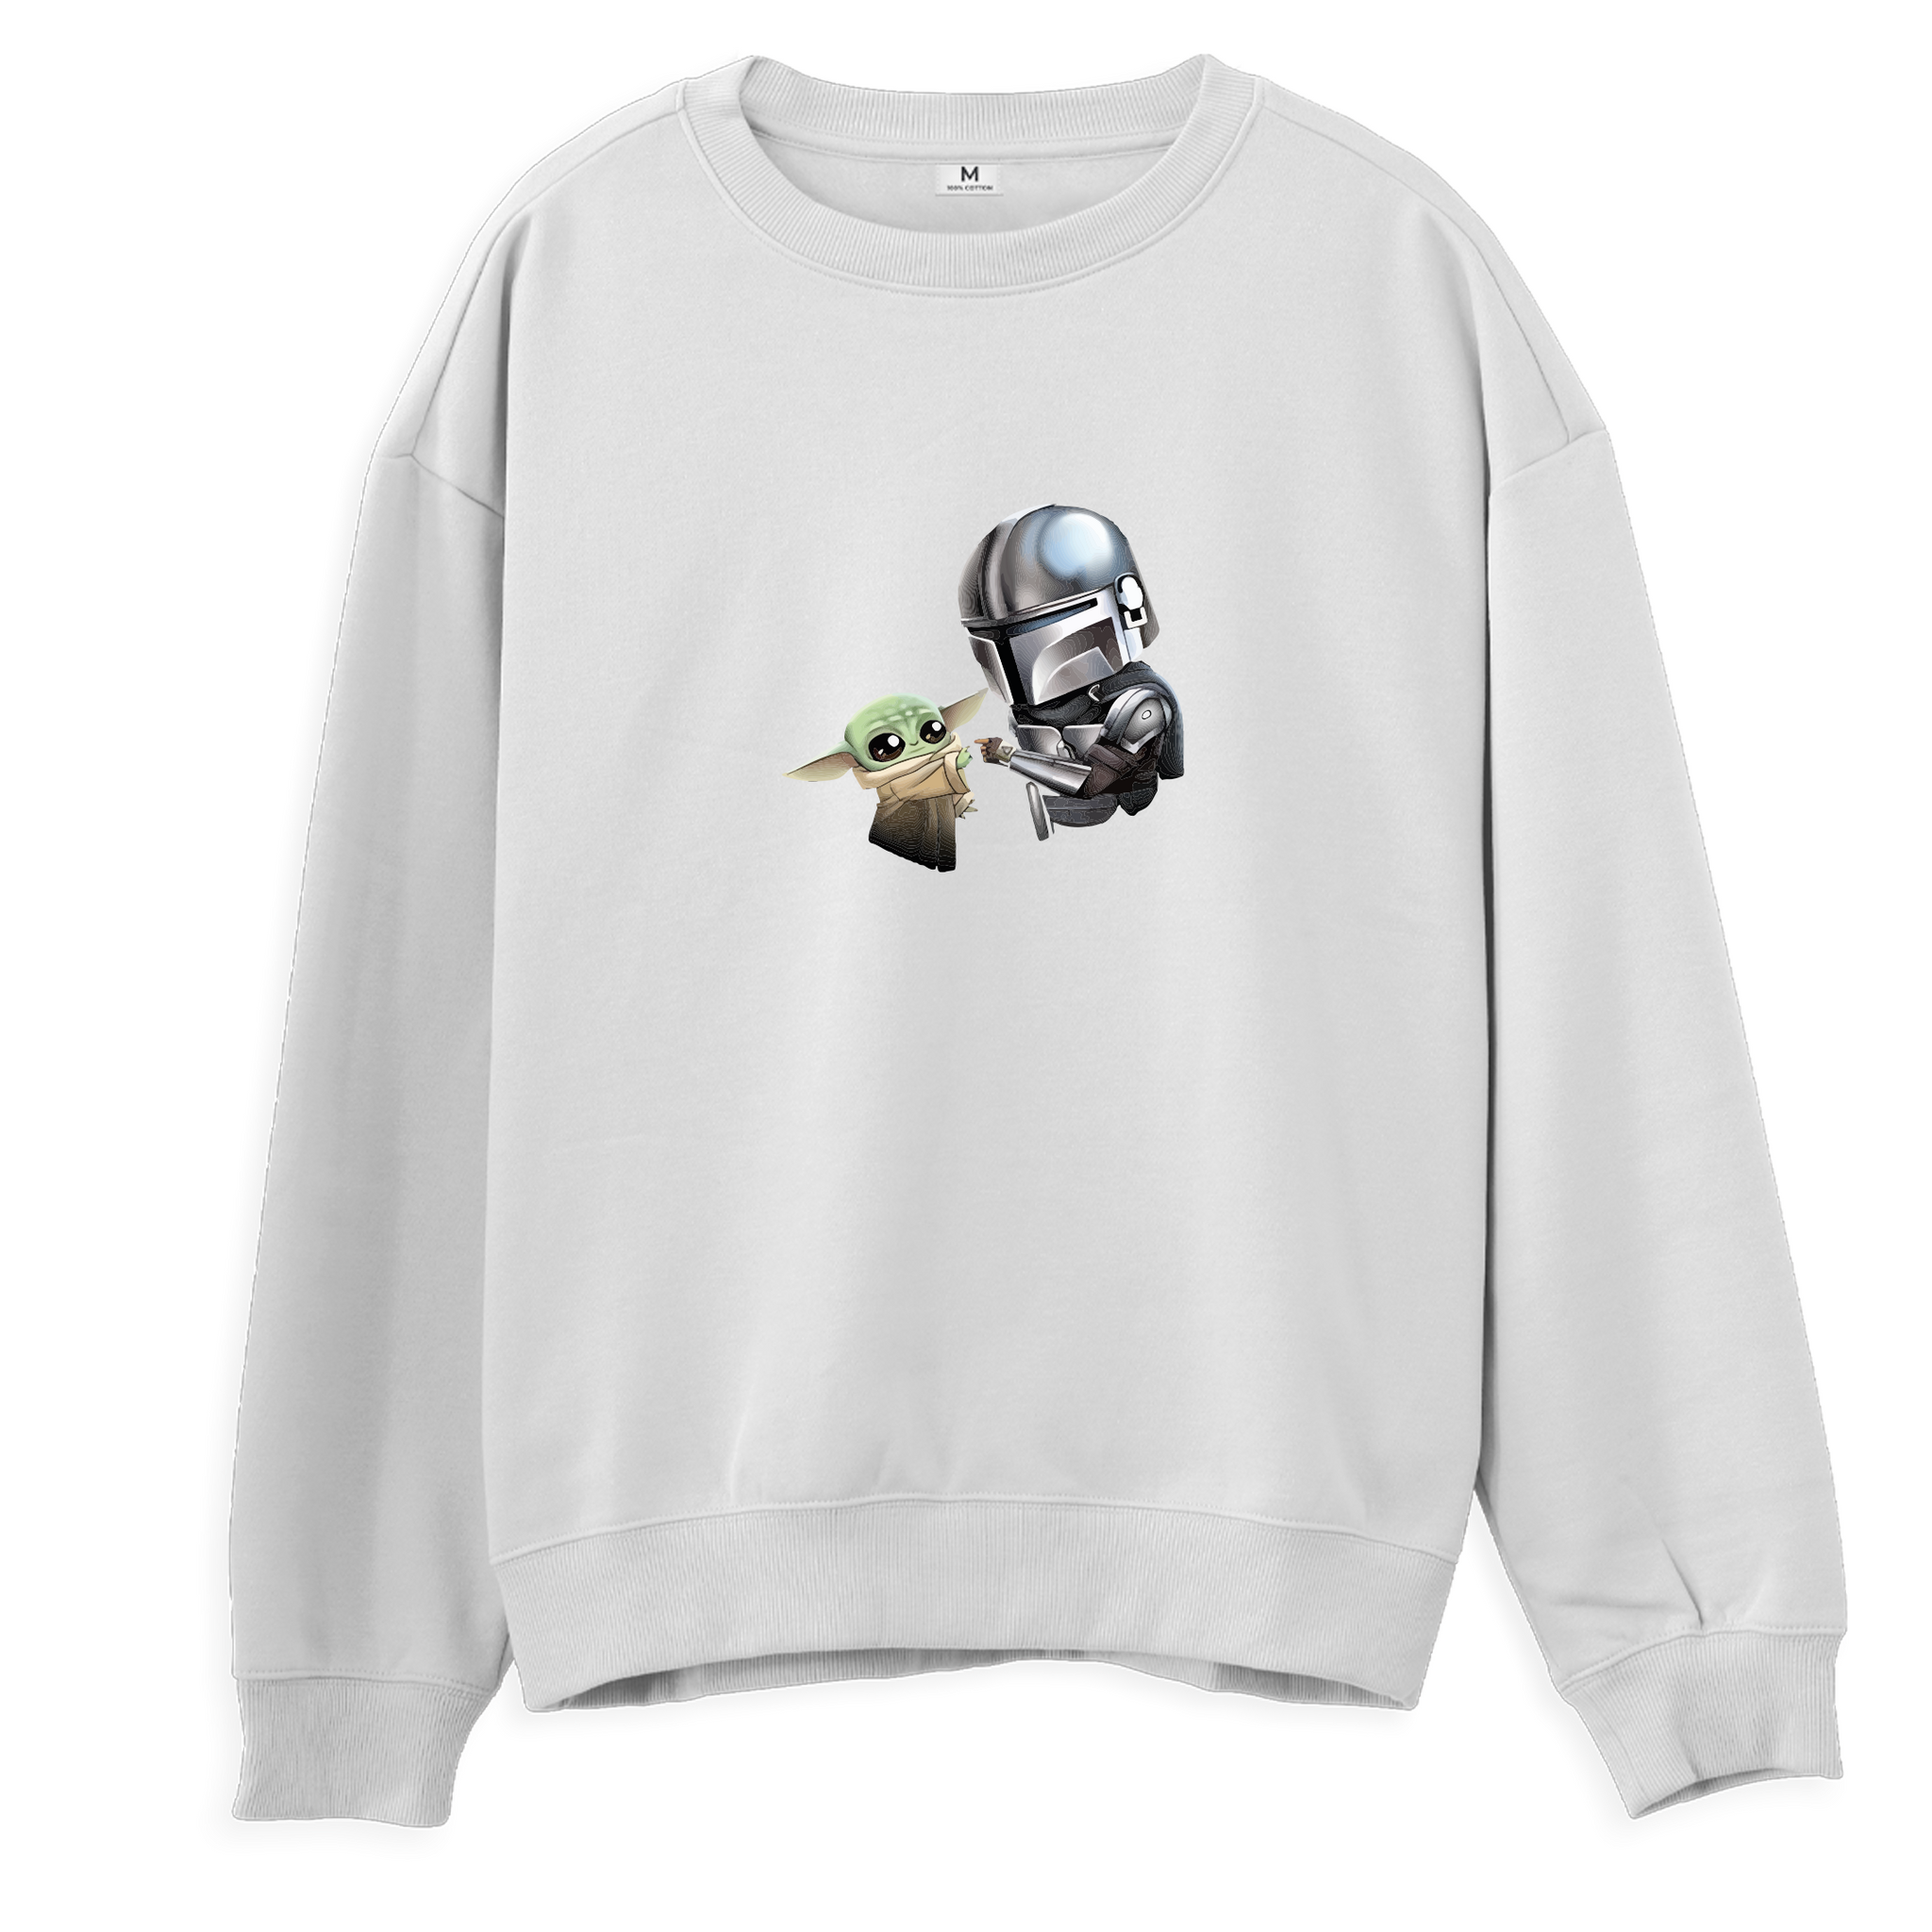 Yoda Friends - Sweatshirt